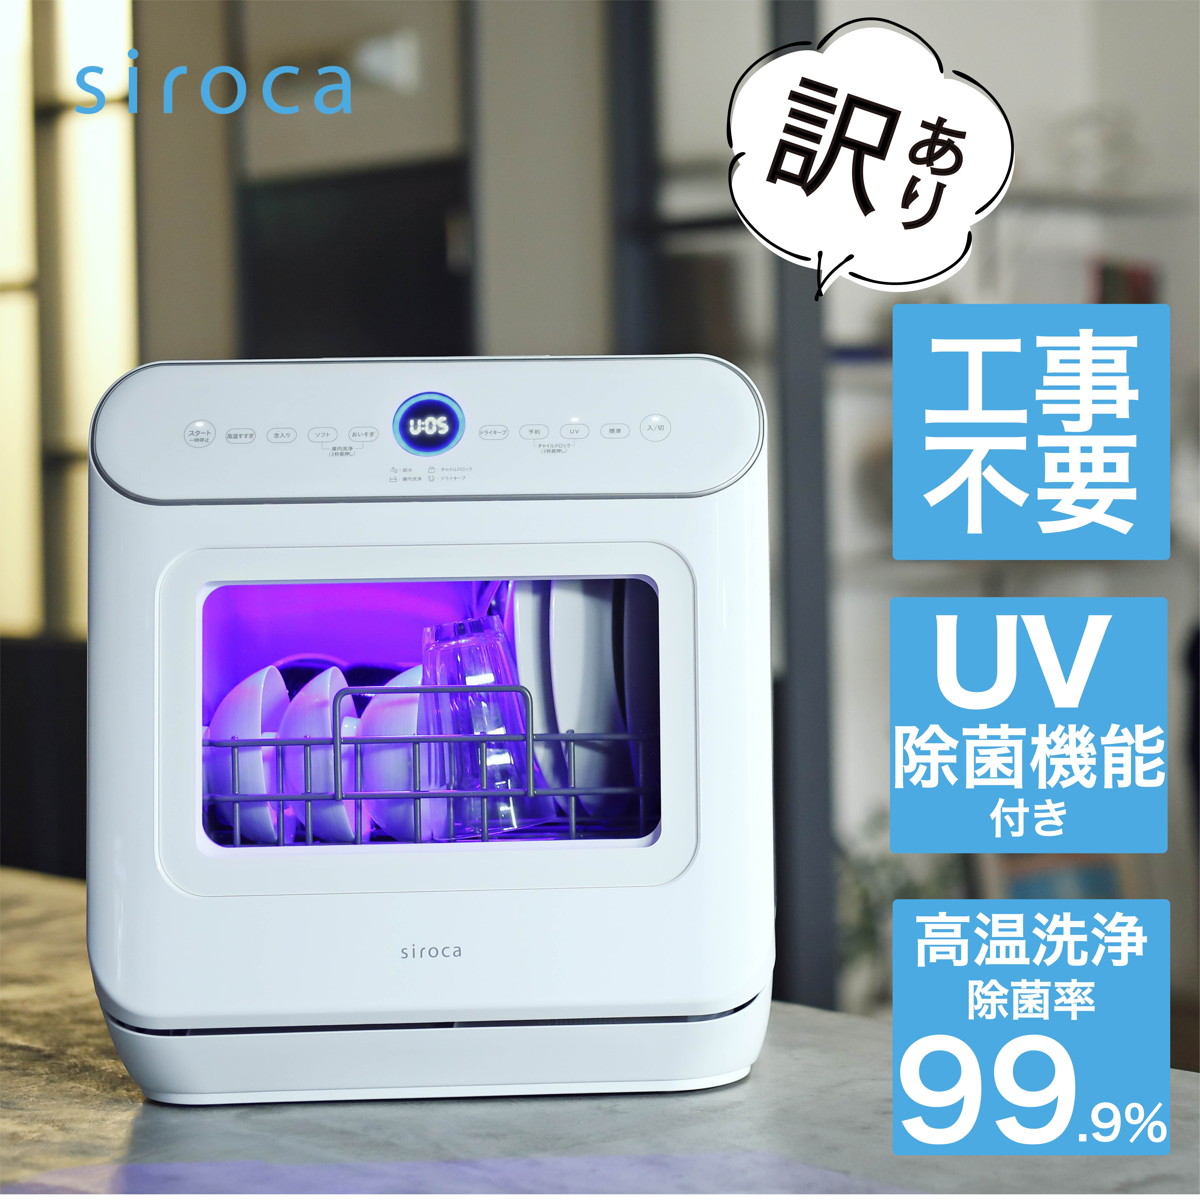 【訳あり品】siroca 2WAY 食器洗い乾燥機 UV除菌 工事不要 分岐水栓可